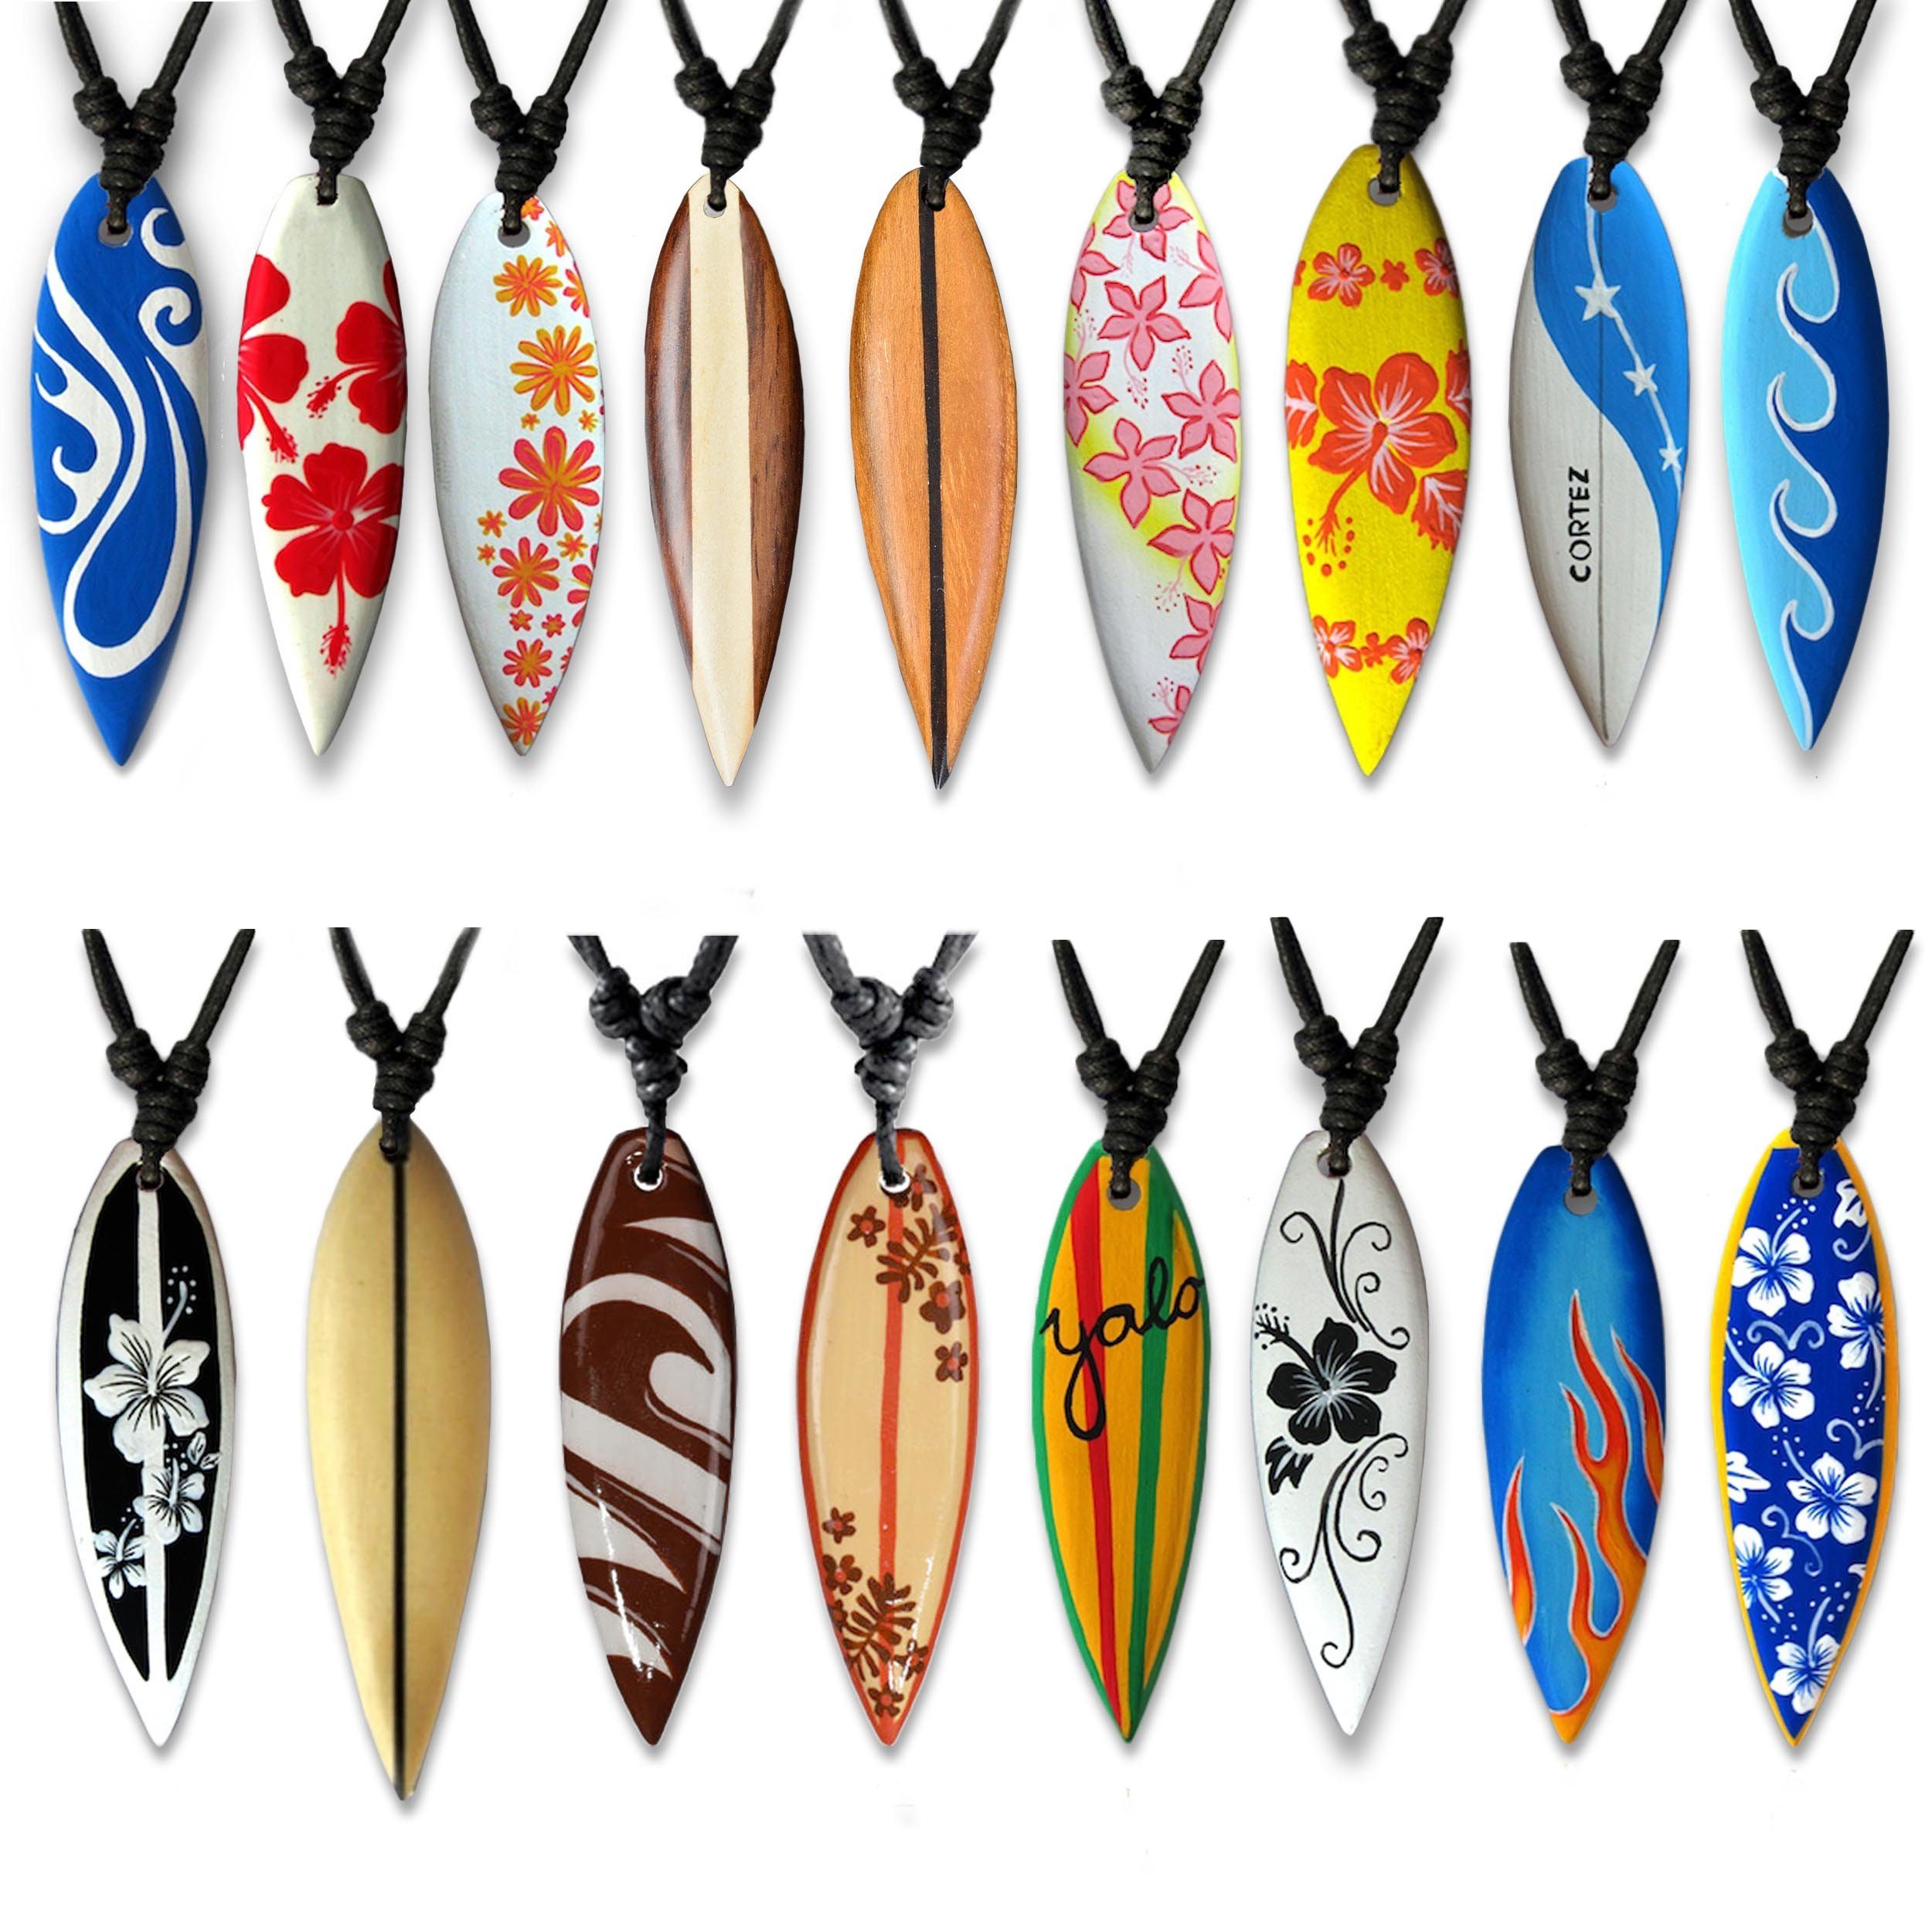 Surferkette Anhänger mit viva-adorno Holzkette Kette Halskette Blume Wellen verschiedene Surfbrett Hibiskus Surfer Hawaii Designs, Beige Holz Flammen Yolo